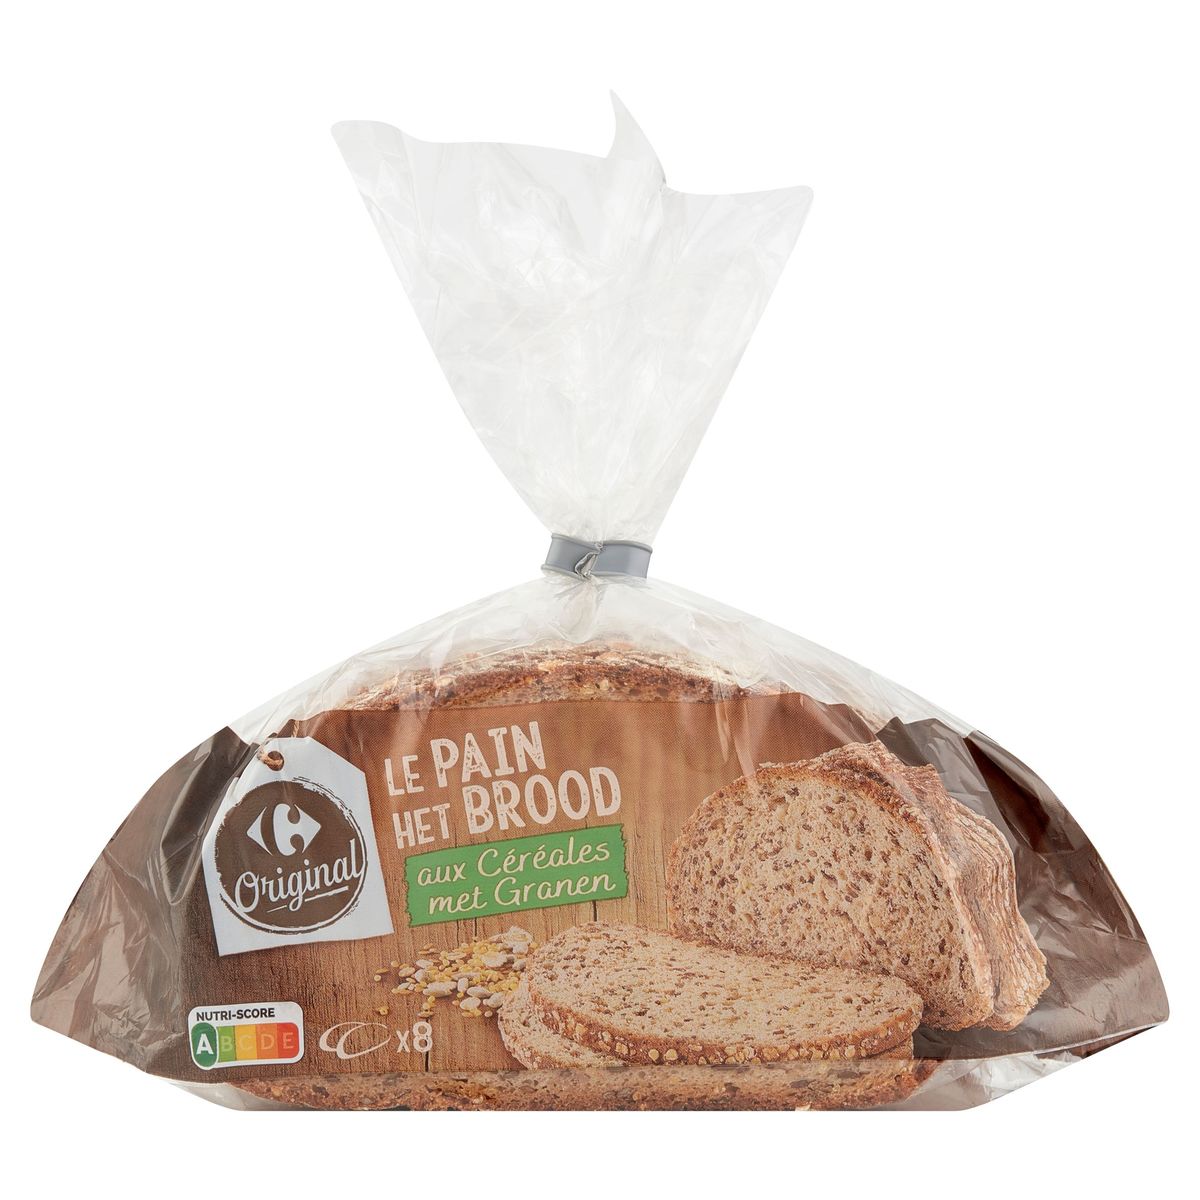 Carrefour Original het Brood met Granen 8 Stuks 500 g